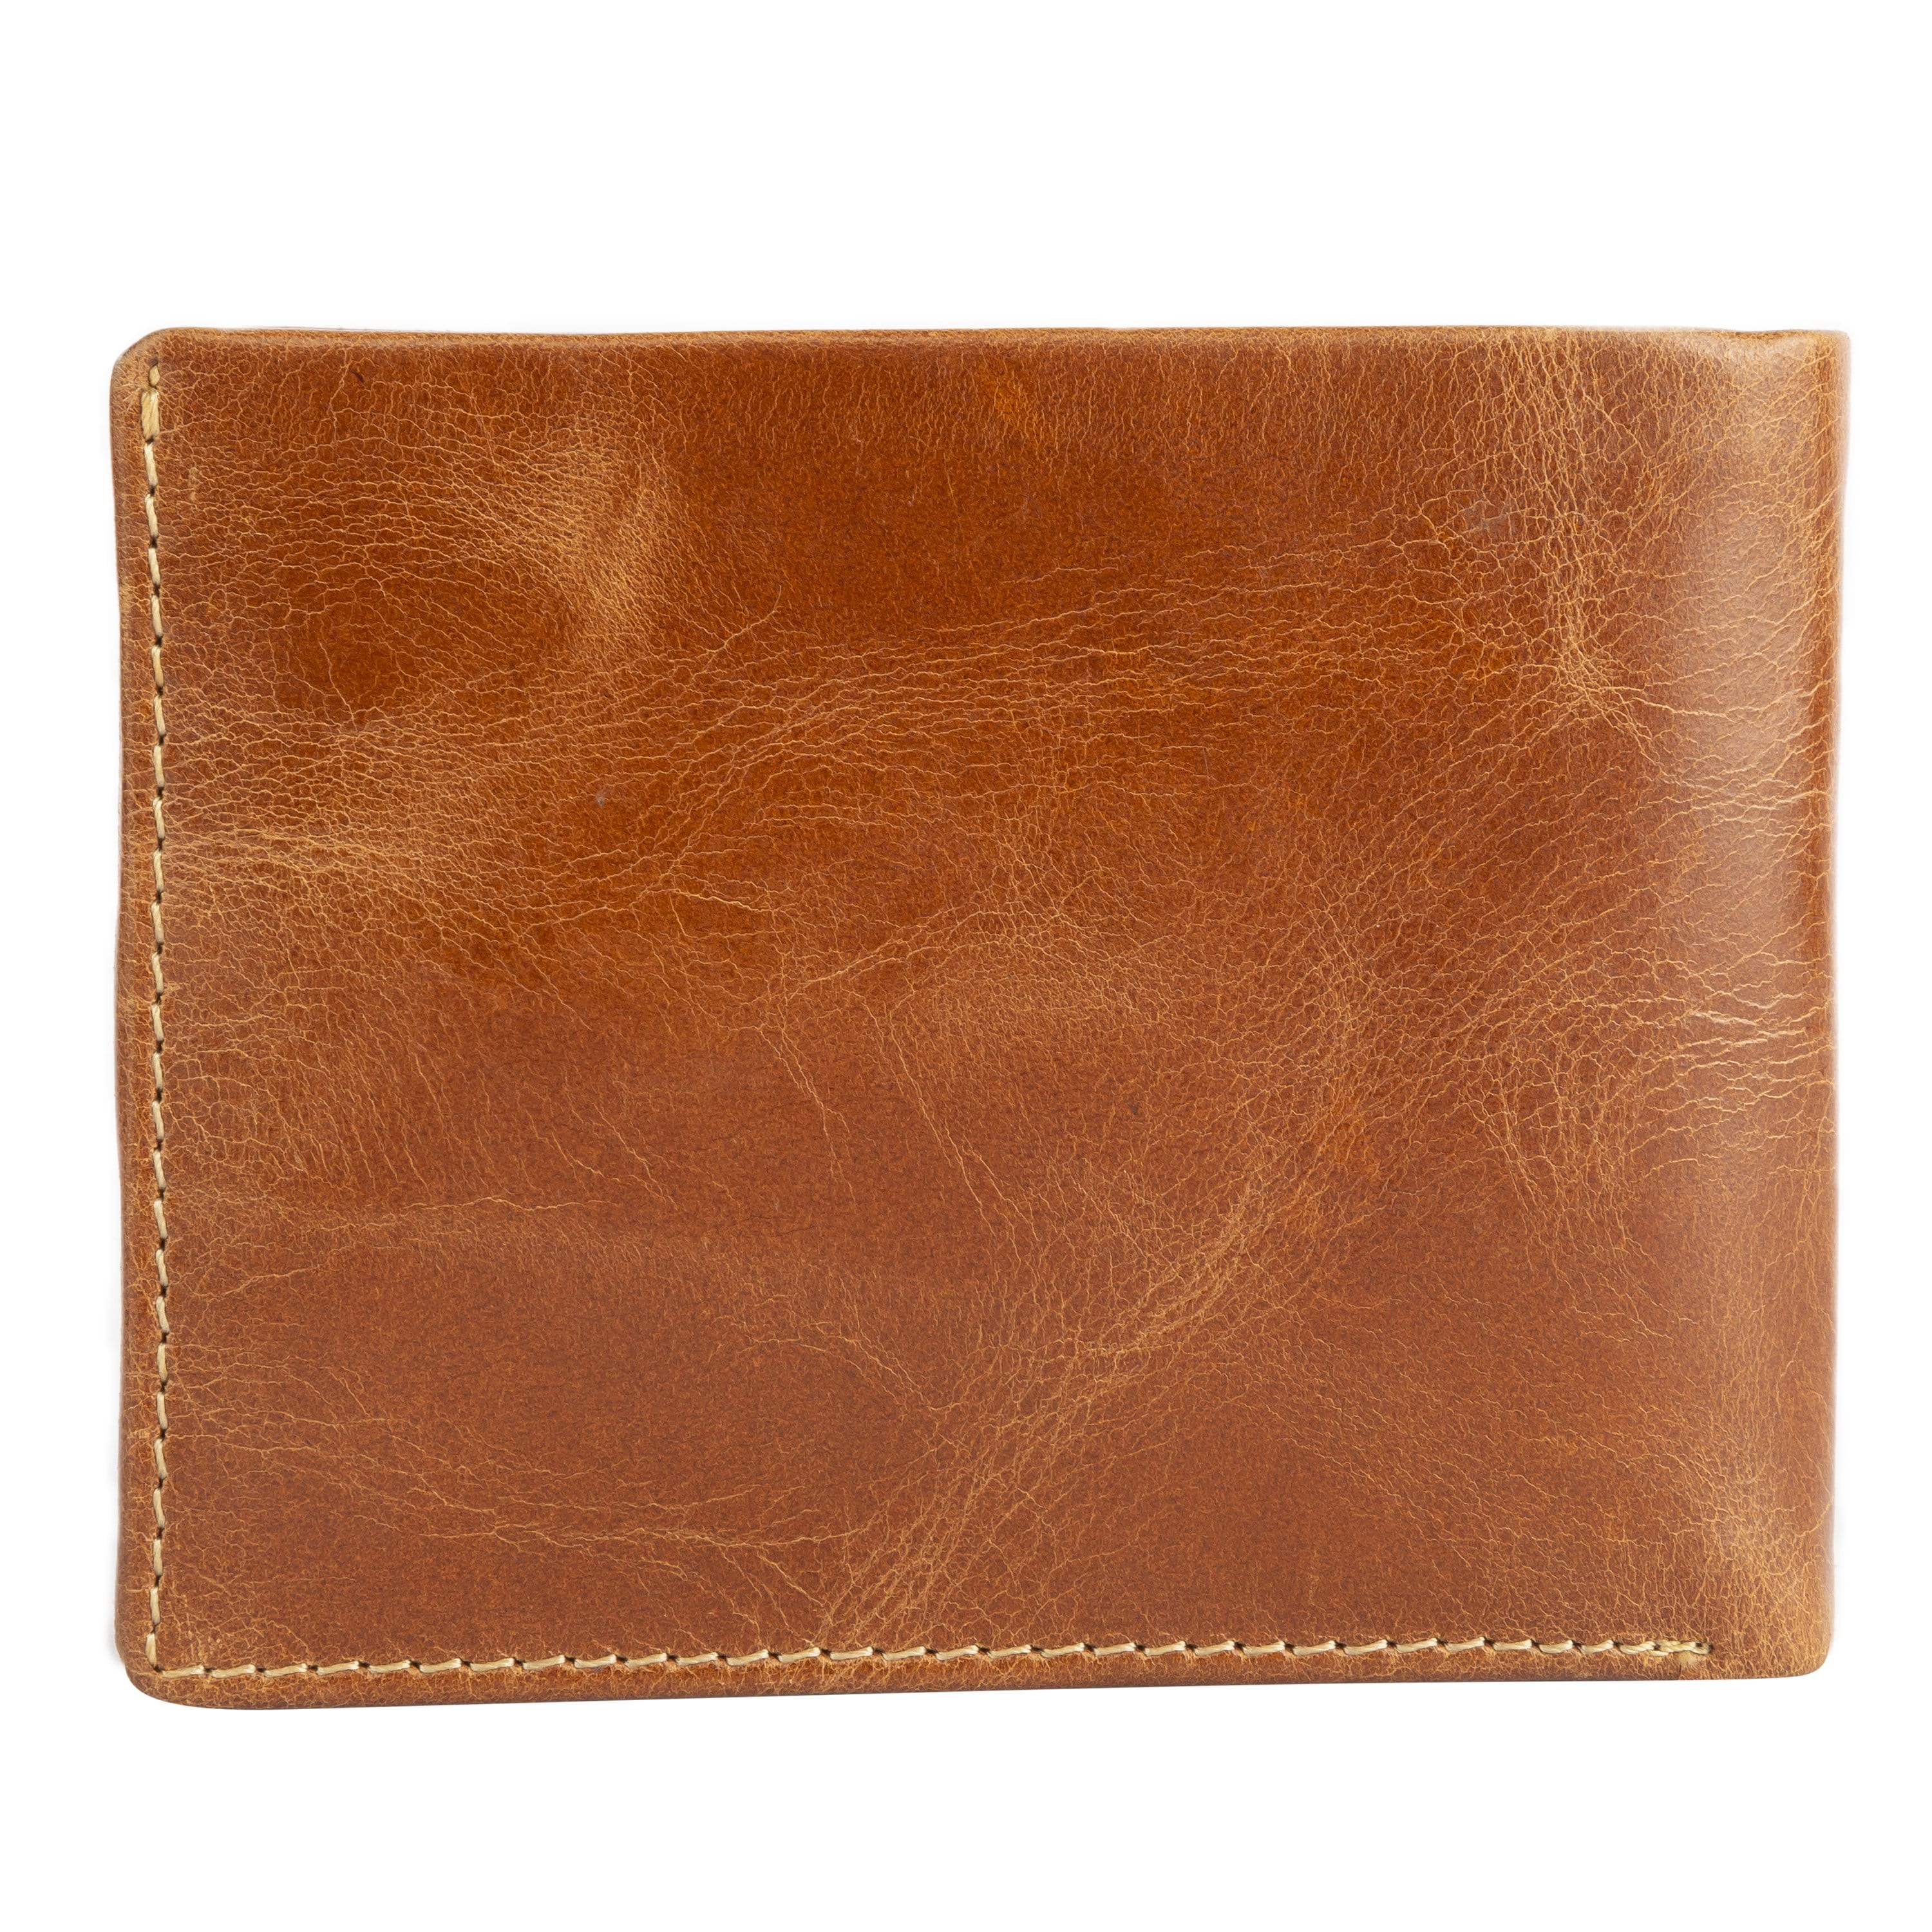 kinnoti Genuine Leather Wallet